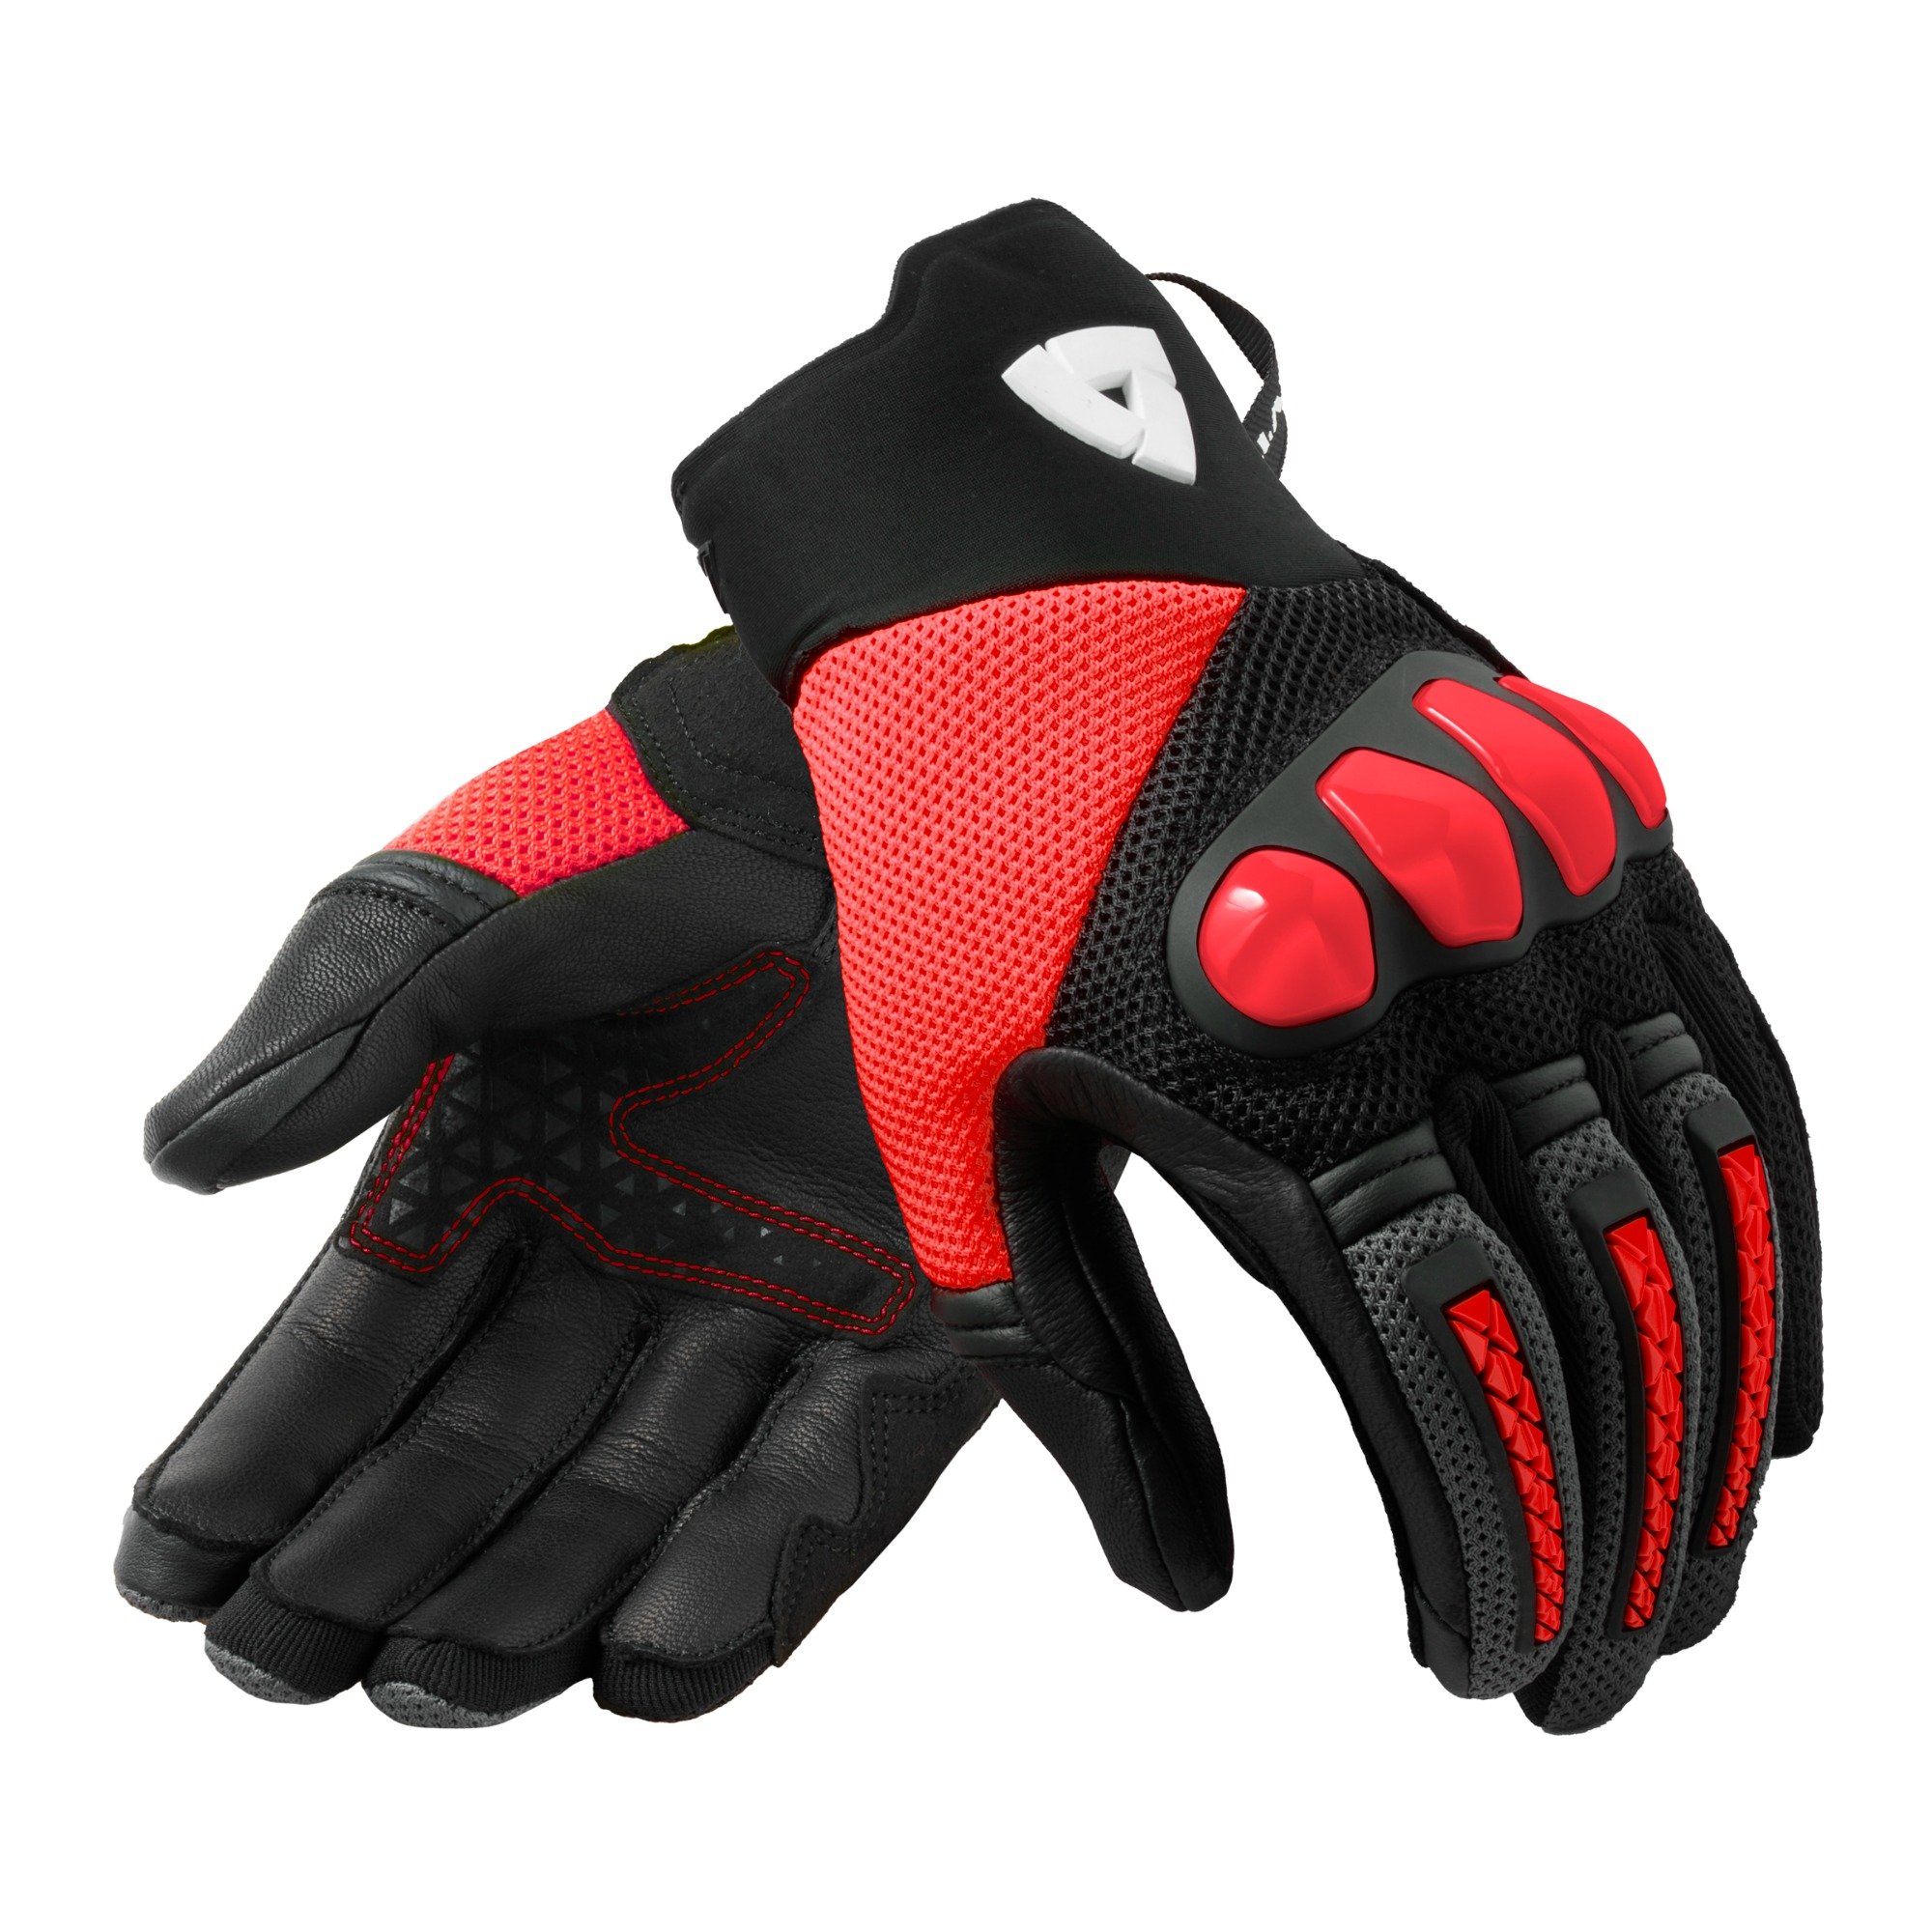 Image of REV'IT! Gloves Speedart Air Black Neon Red Size M ID 8700001361002